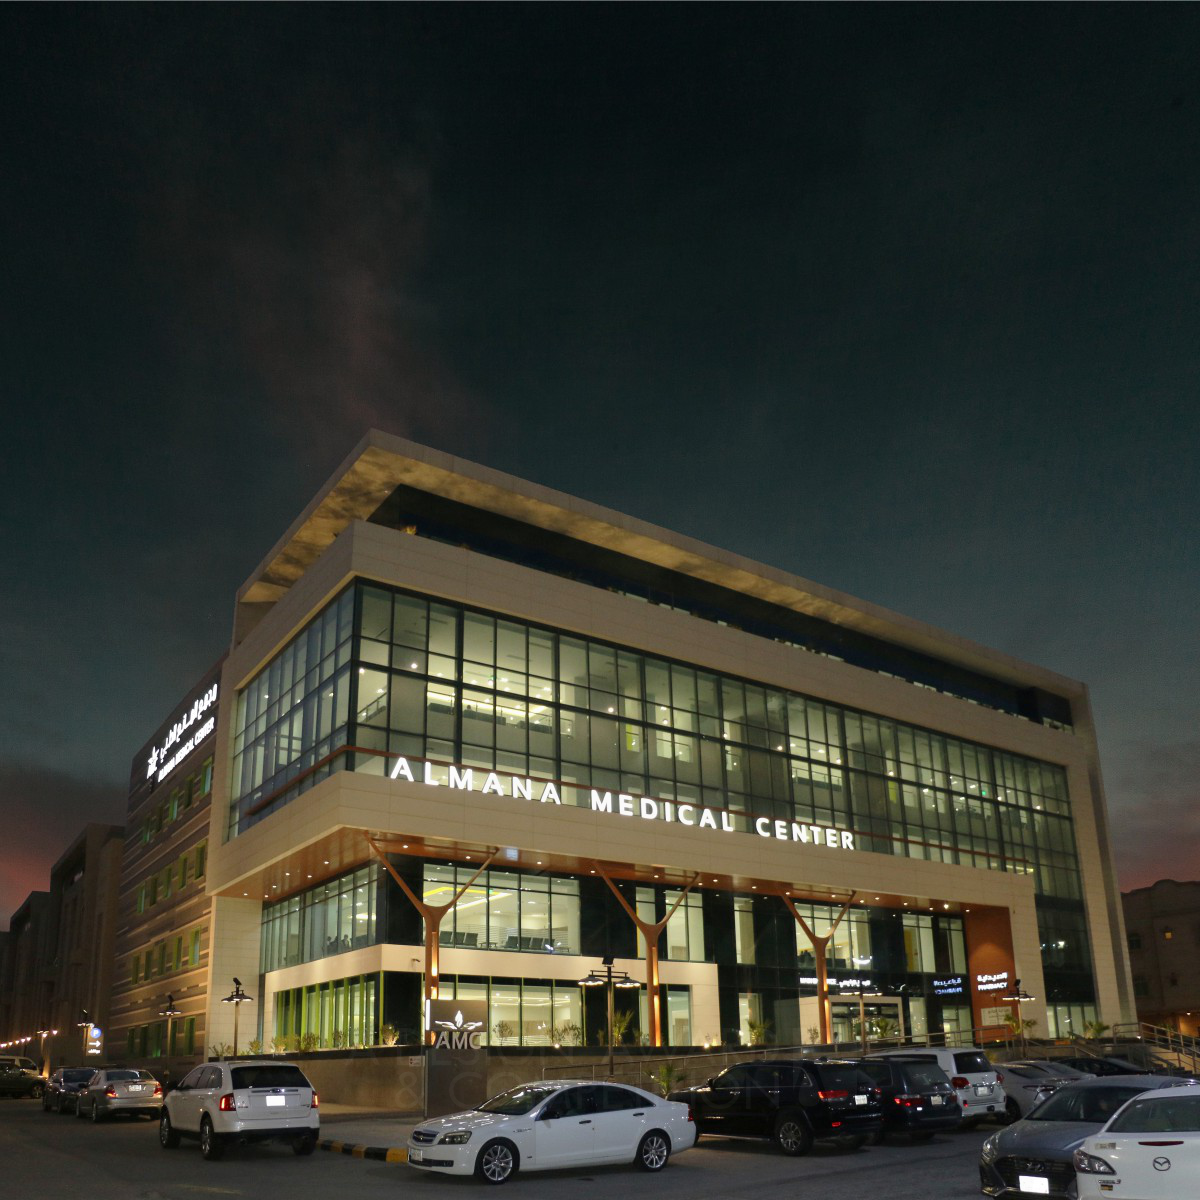 Almana - Muhammed El Sepaey's Visionary Medical Center Design